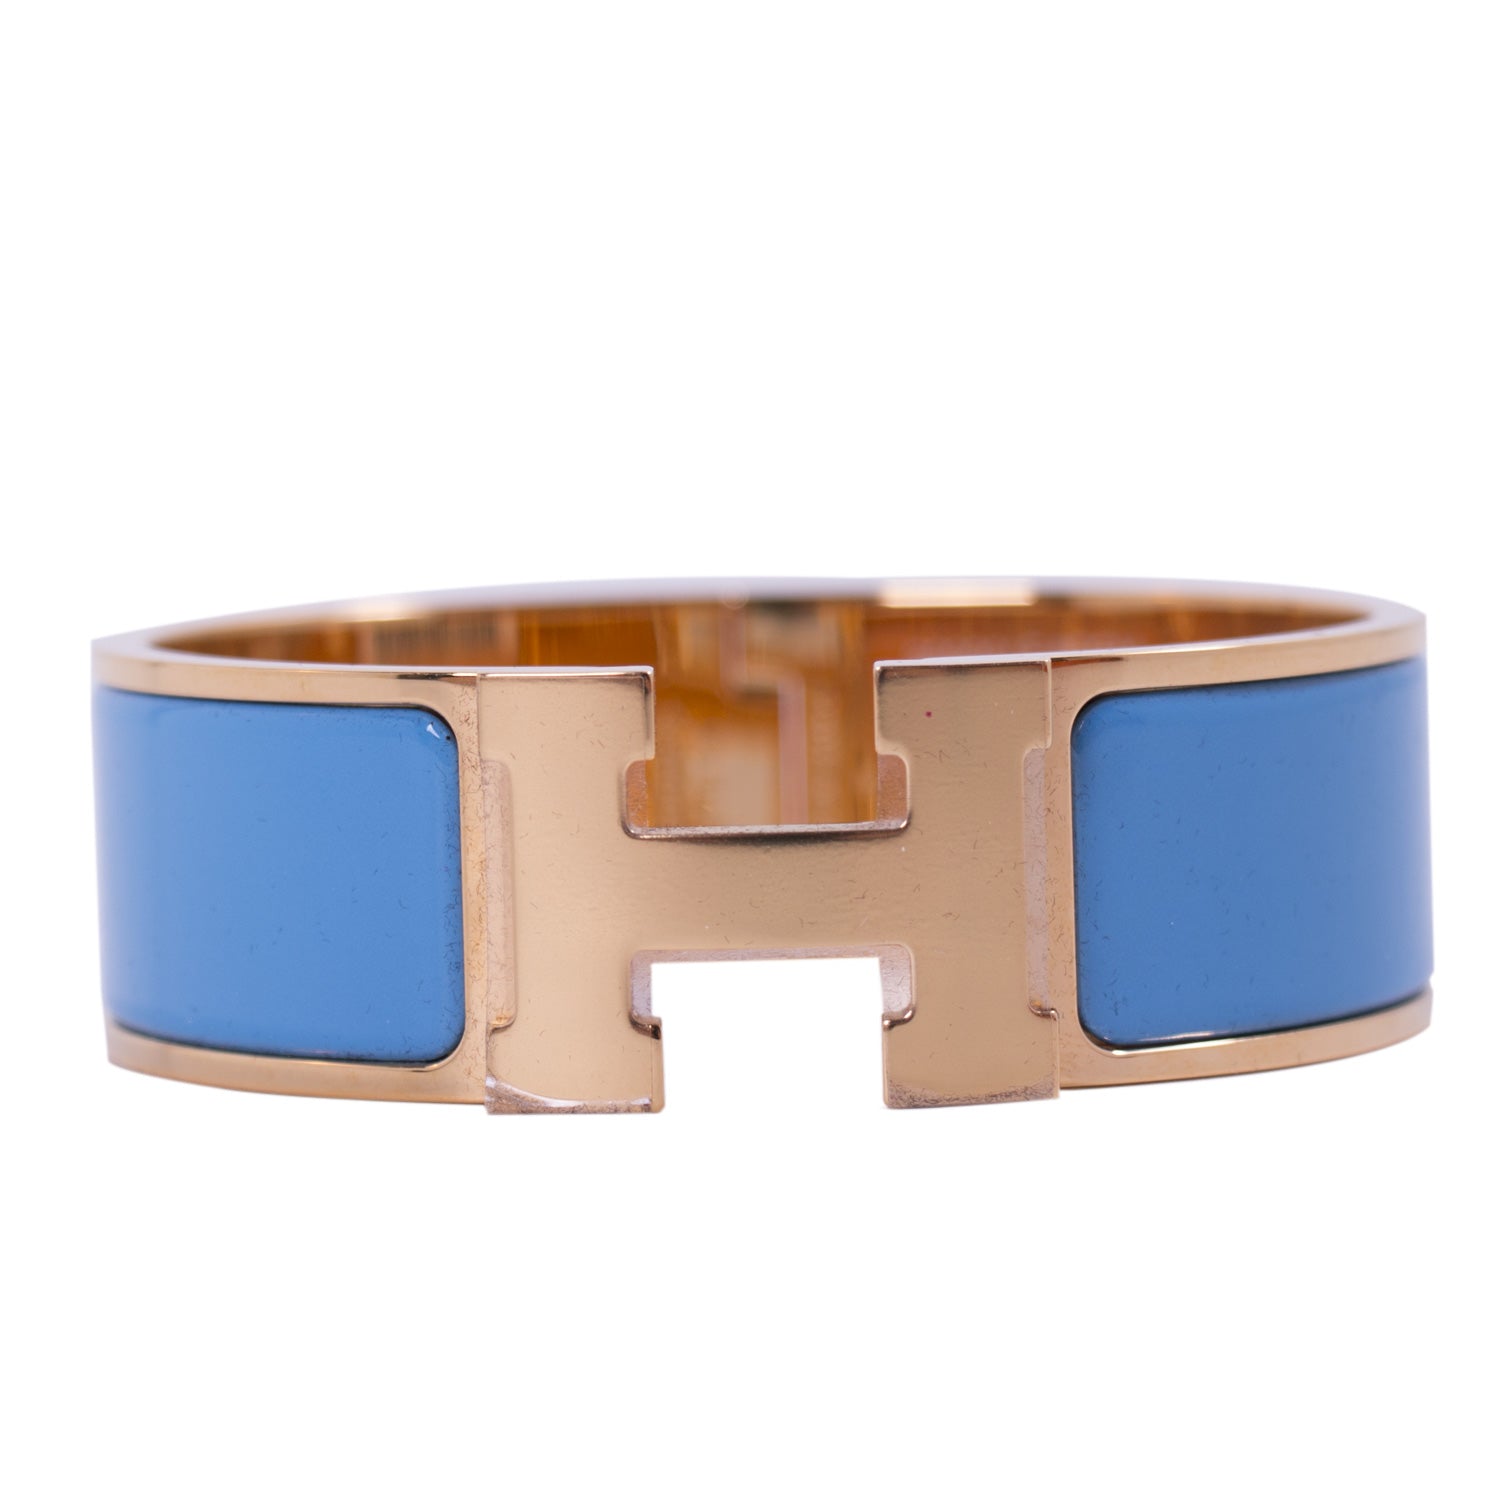 Shop authentic Hermès H Clic Clac Bracelet at revogue for just USD 625.00